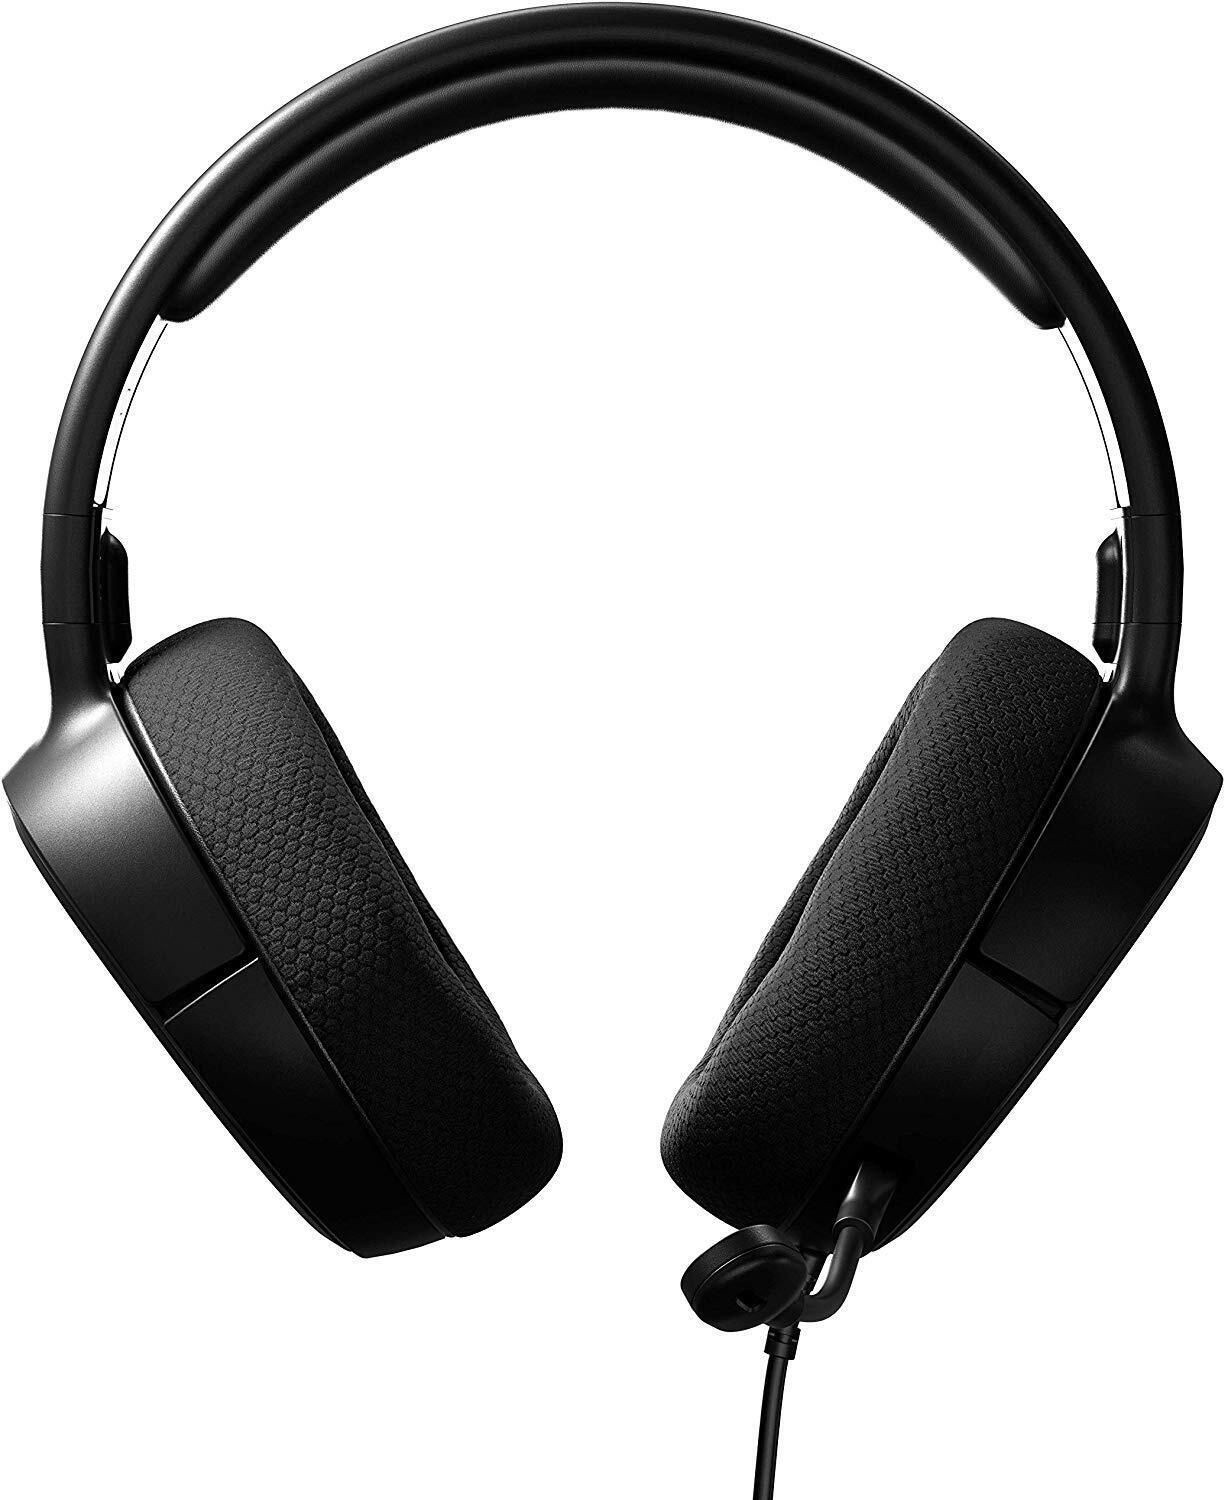 Steelseries Arctis 1 Black gaming headset